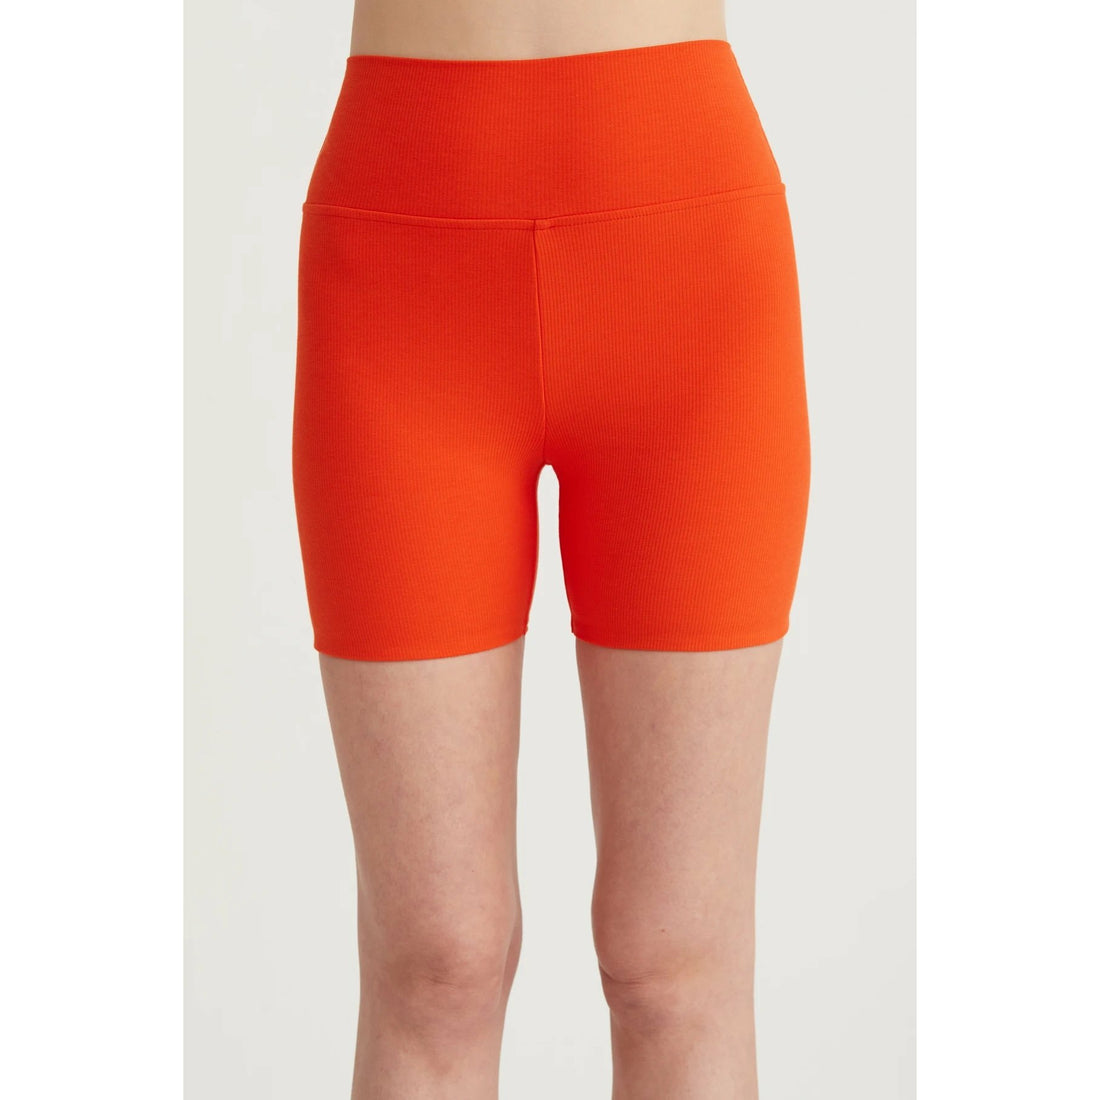 Blanca Bike Shorts - Red Orange